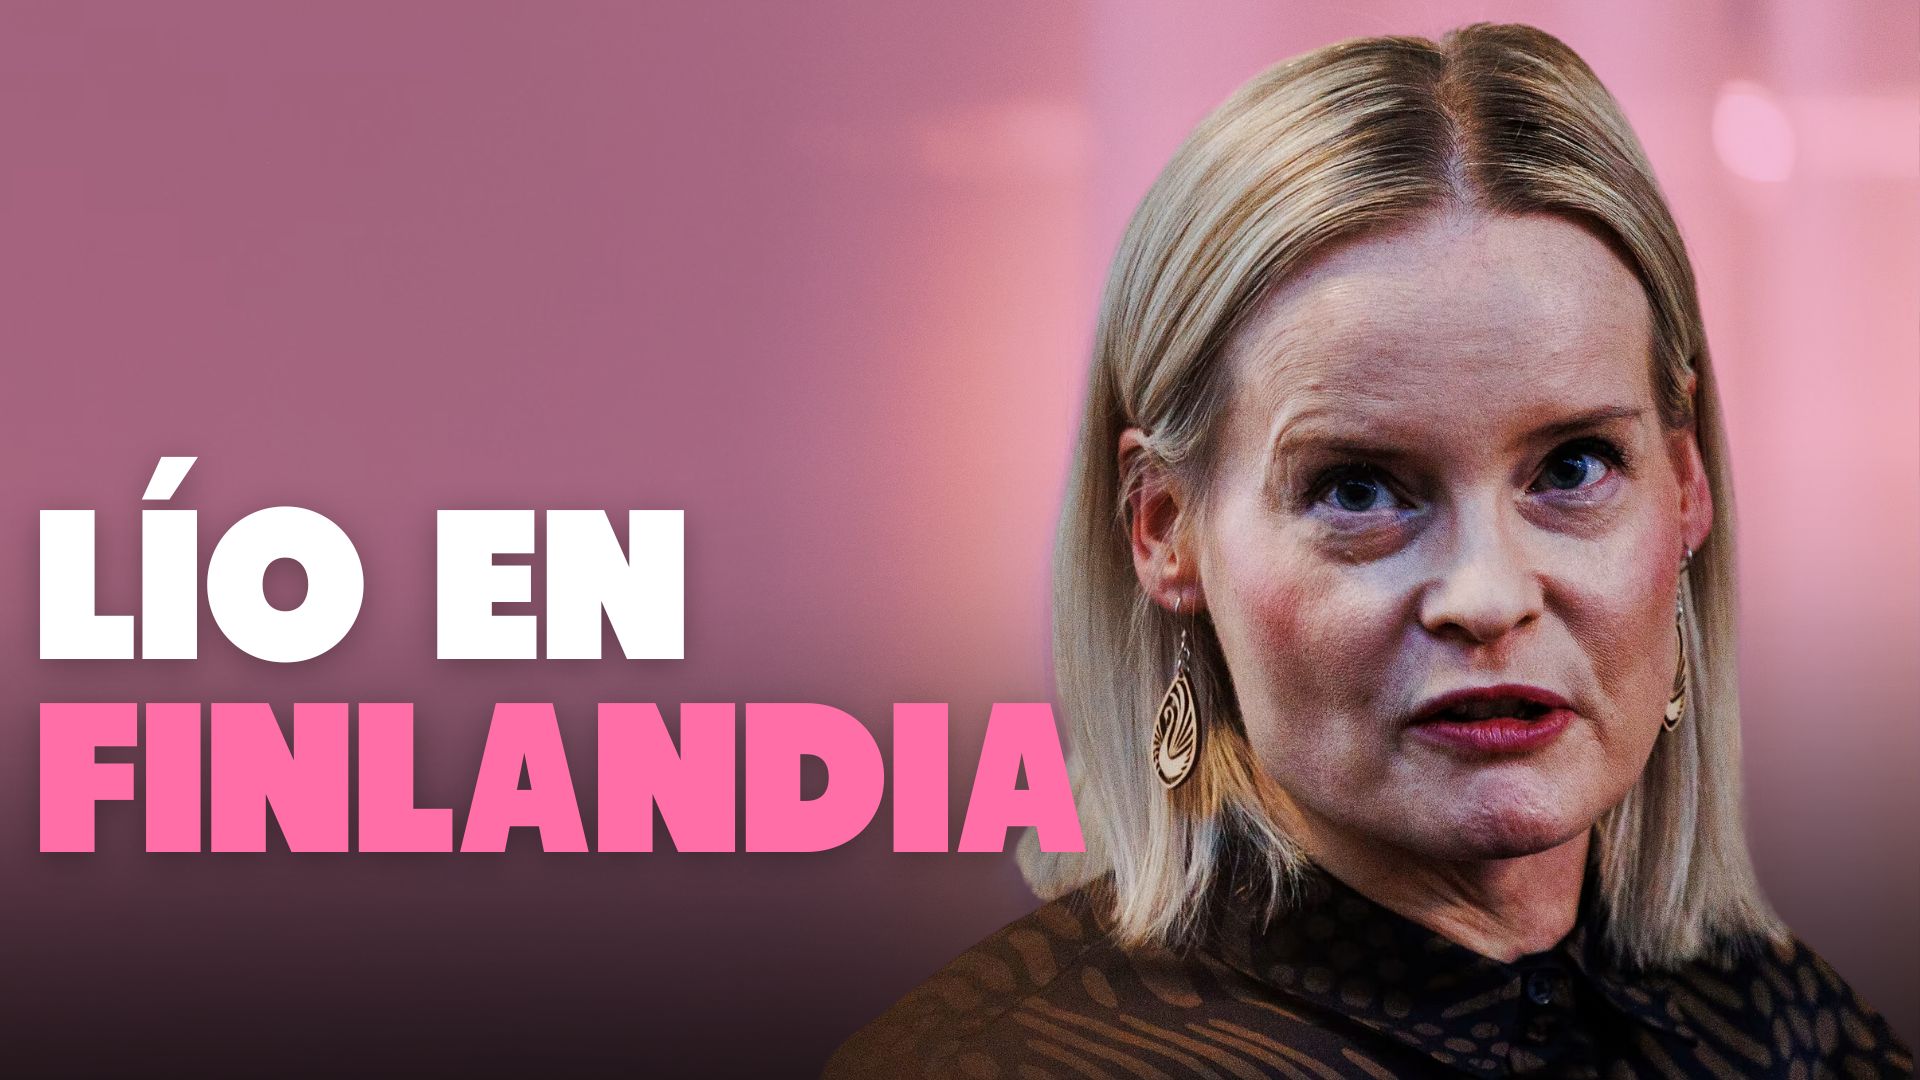 “¿Alguien se apunta a pegar a mendigos?”: lío en Finlandia por antiguos comentarios racistas de la ministra de Finanzas